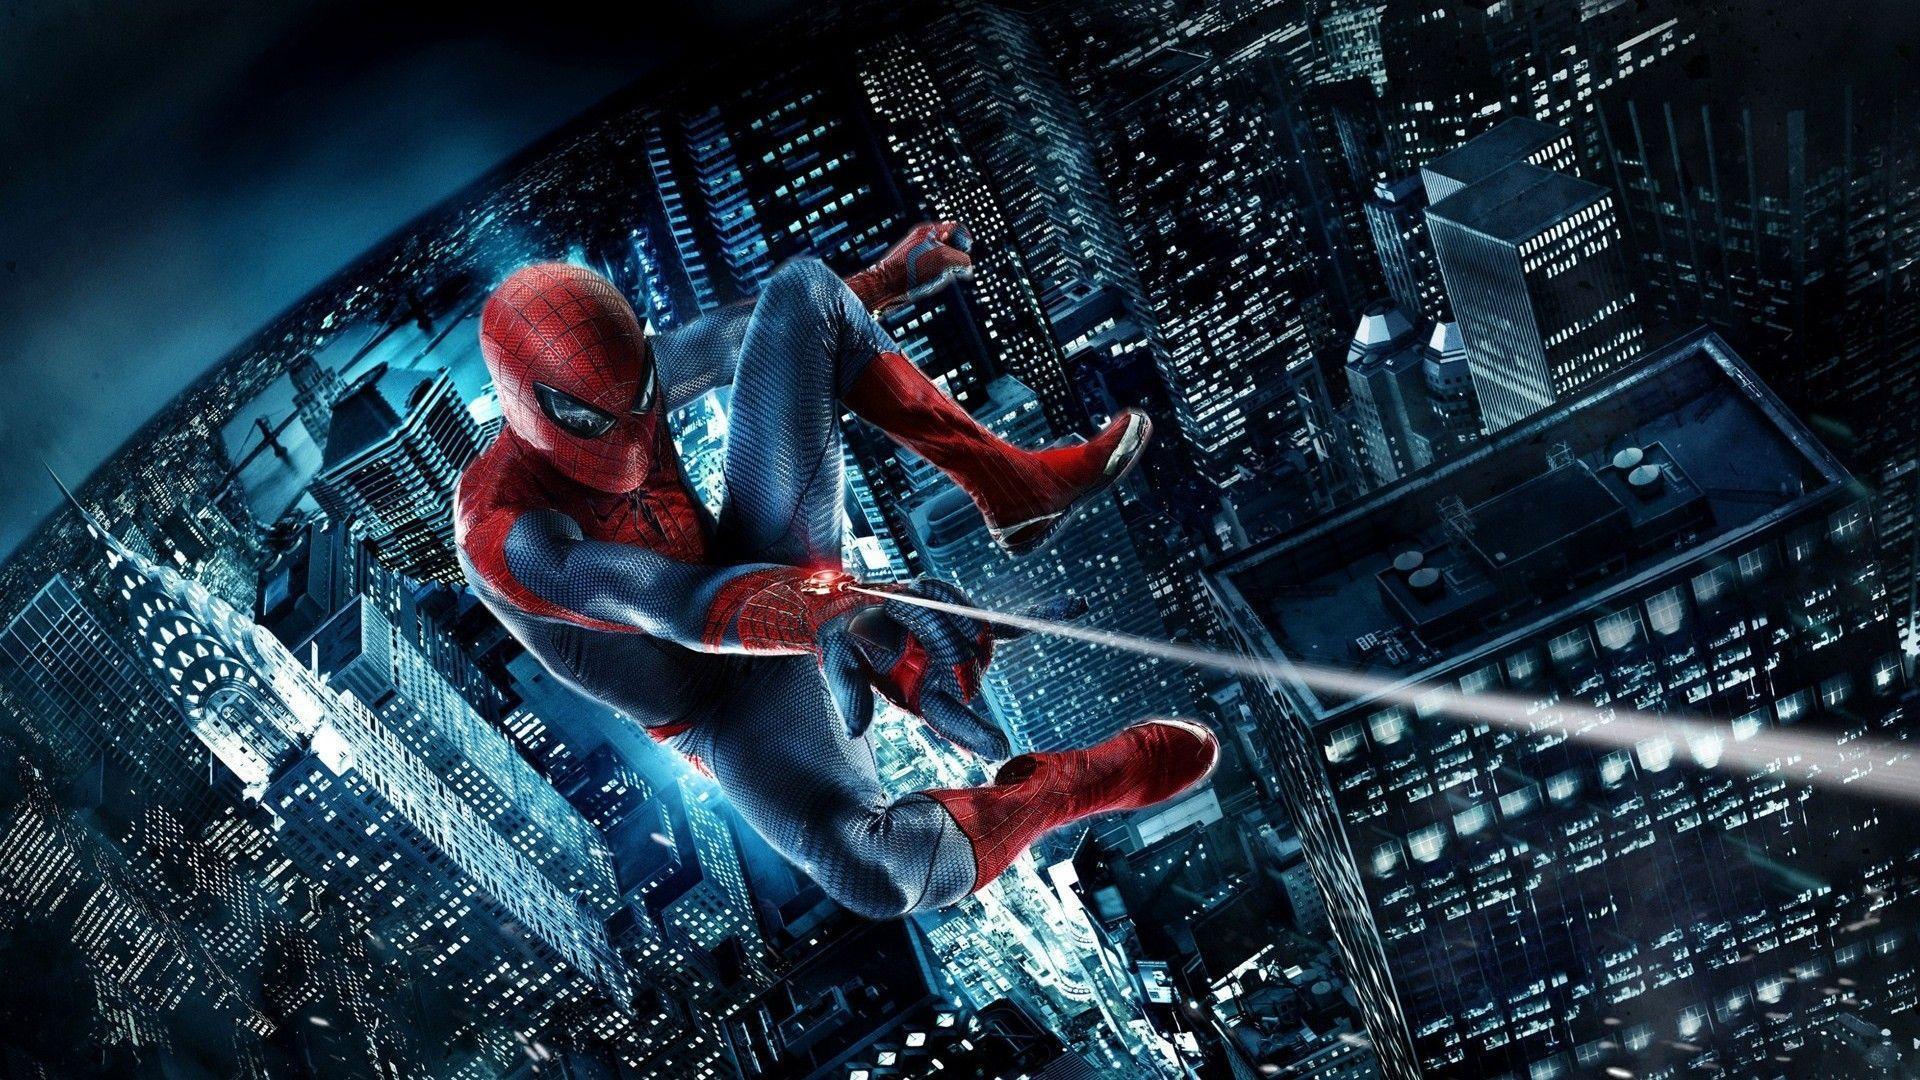 HD Black Spiderman 3 Wallpaper 1080p Full Size